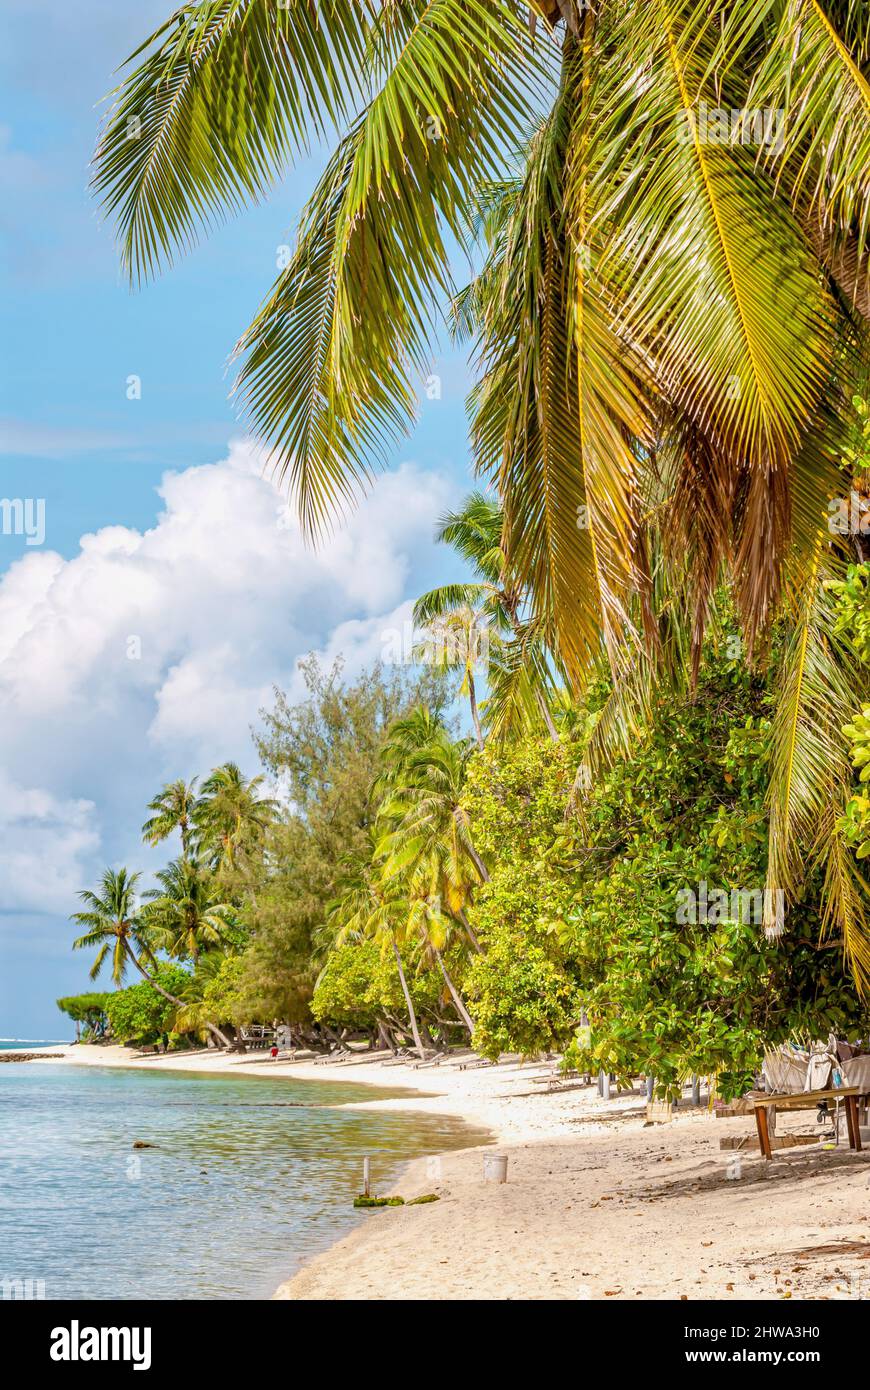 Plage pittoresque de palmiers sur l'île de Bora Bora, Polynésie française Banque D'Images